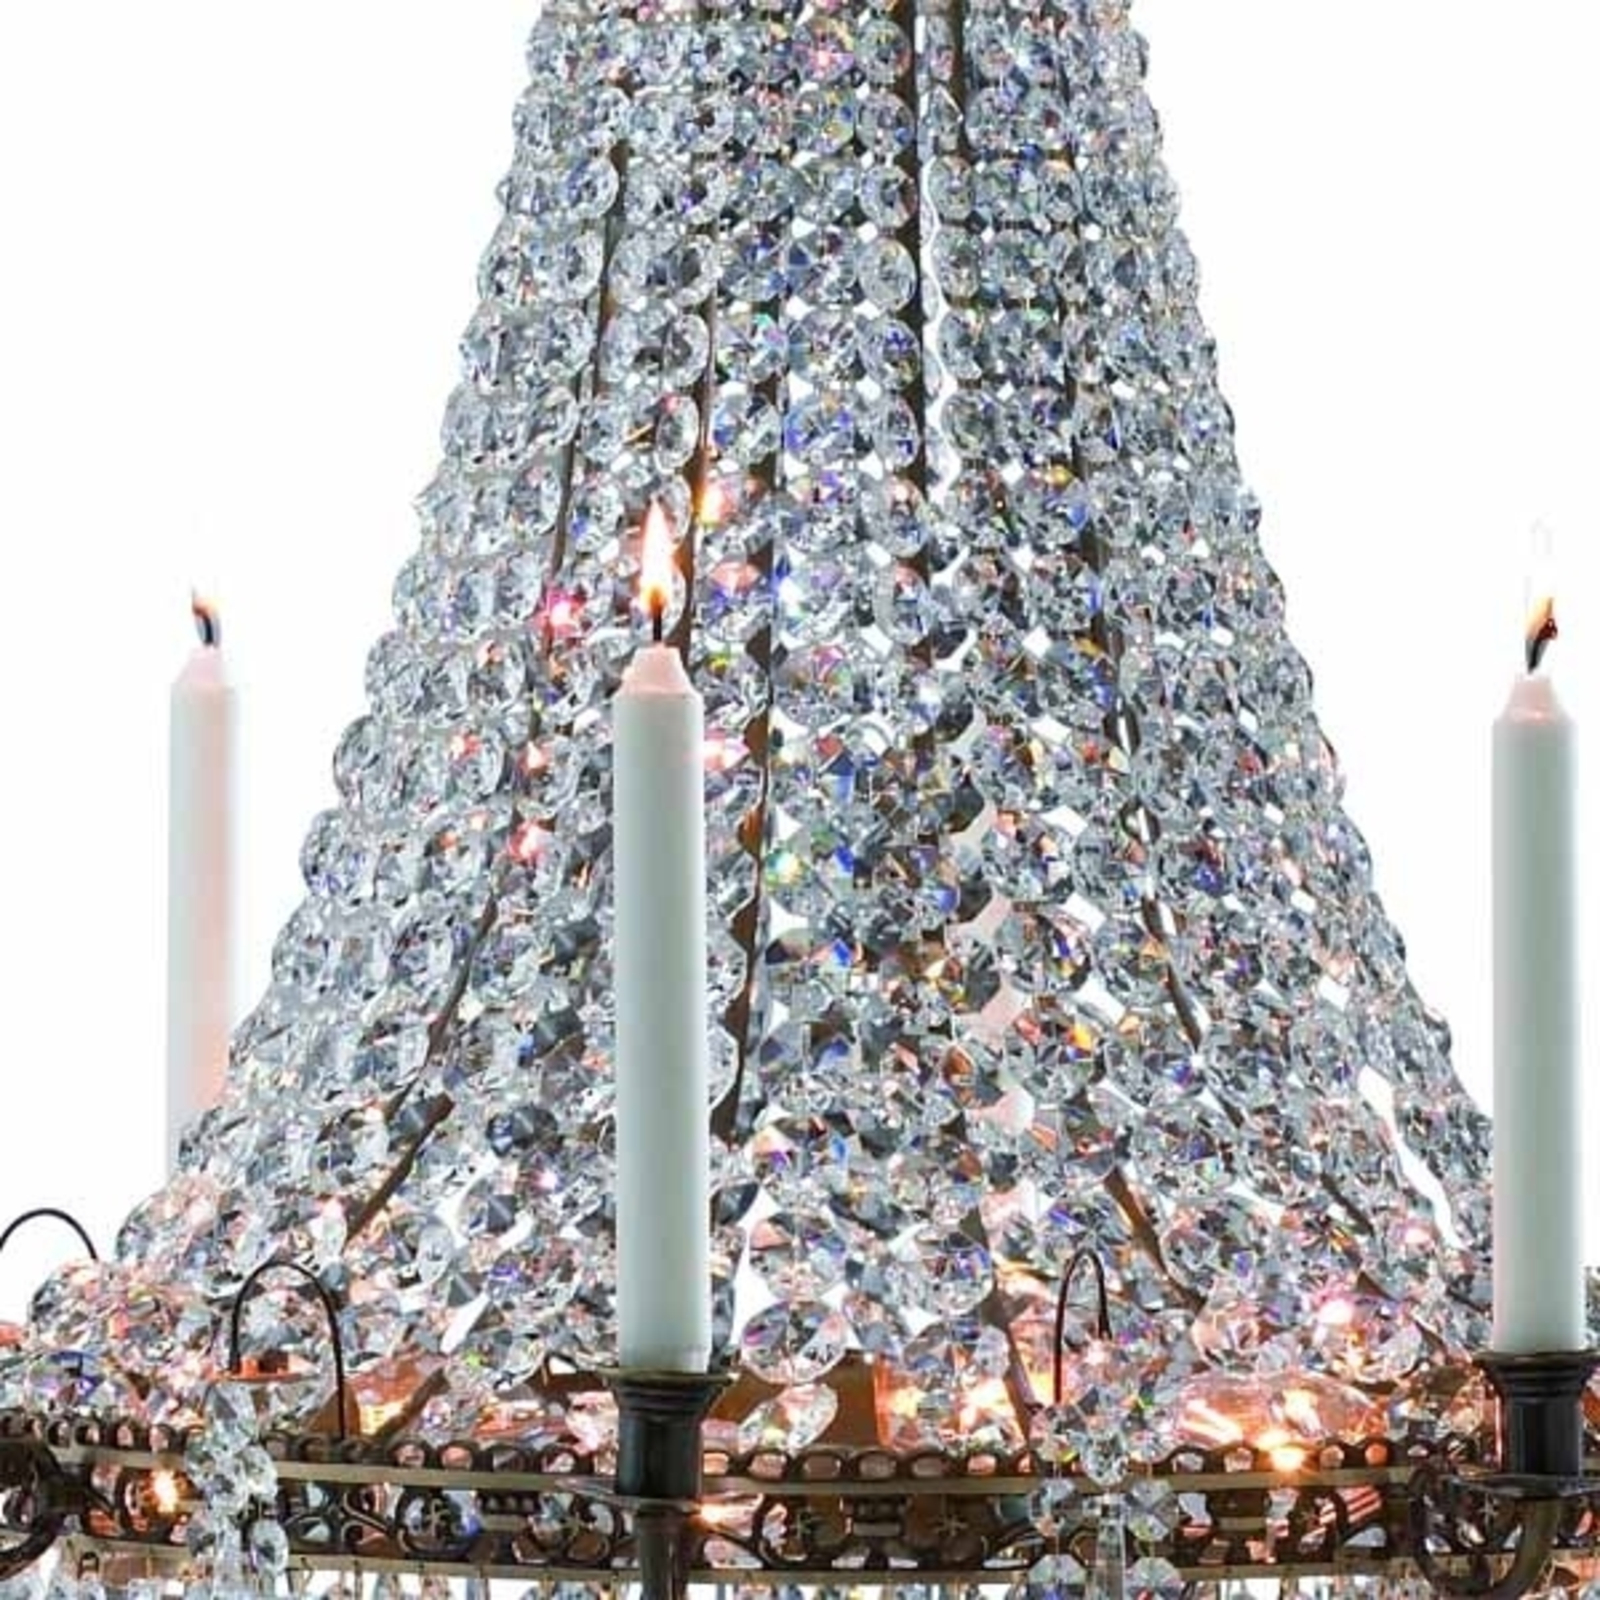 Magnificent candle chandelier Läckö 66 cm